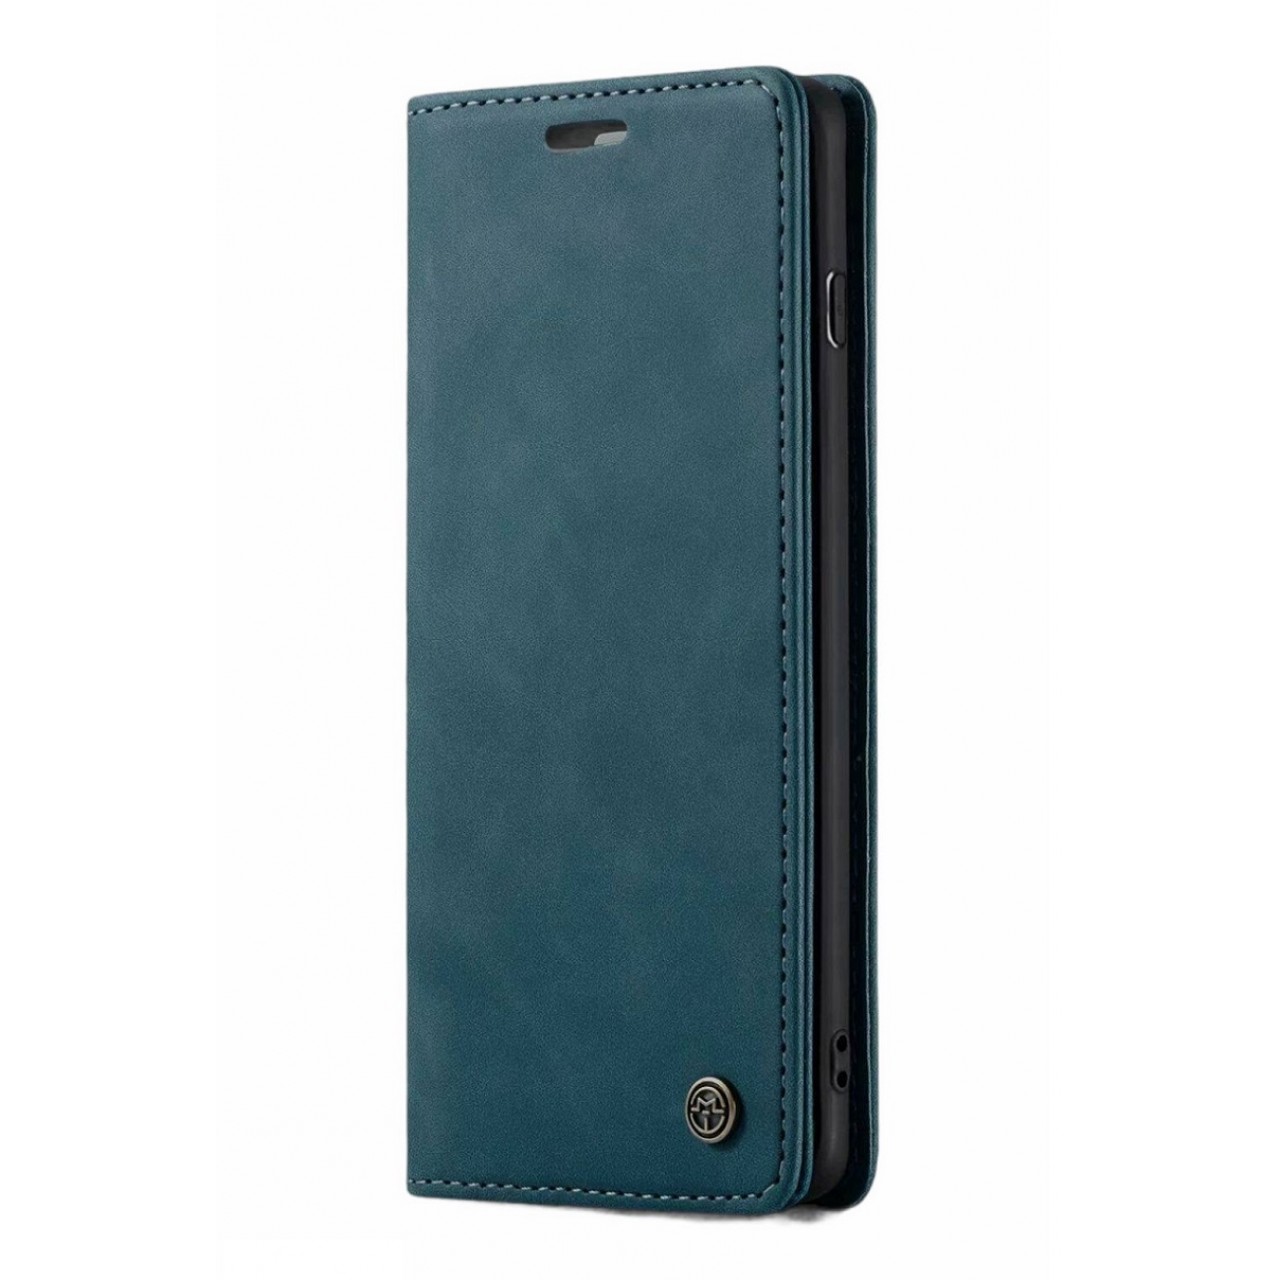 Θήκη Προστασίας Δερμάτινη Τύπου Wallet iPhone XS Max - Luxury Leather Flip Case Caseme - Petrol